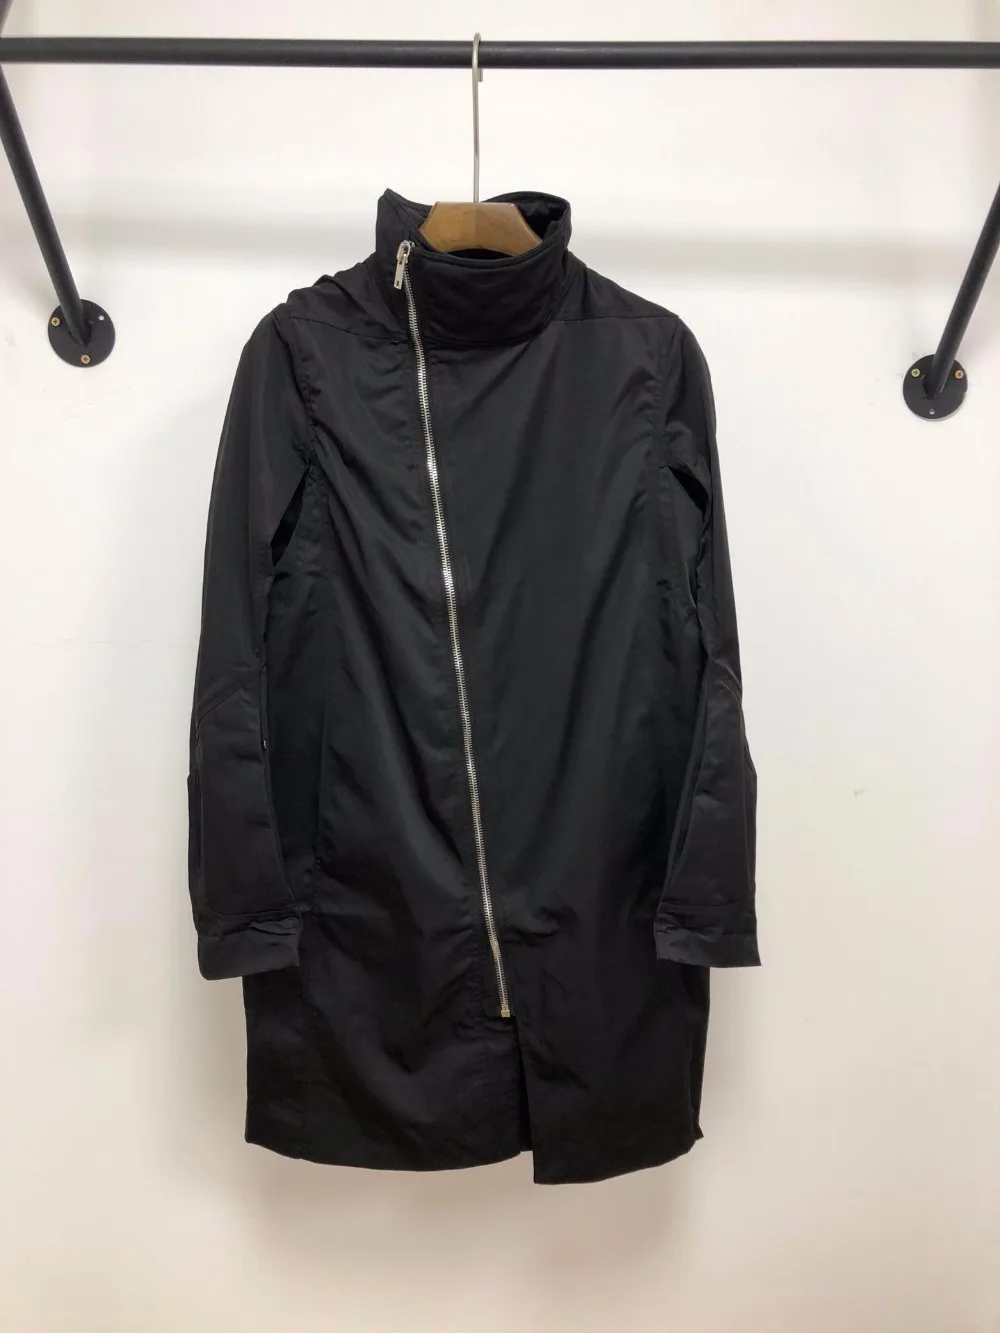 Owen seak мужские пальто куртки Готический стиль мужская одежда весенние женские пылезащитные пальто куртки ветровка черный размер XL